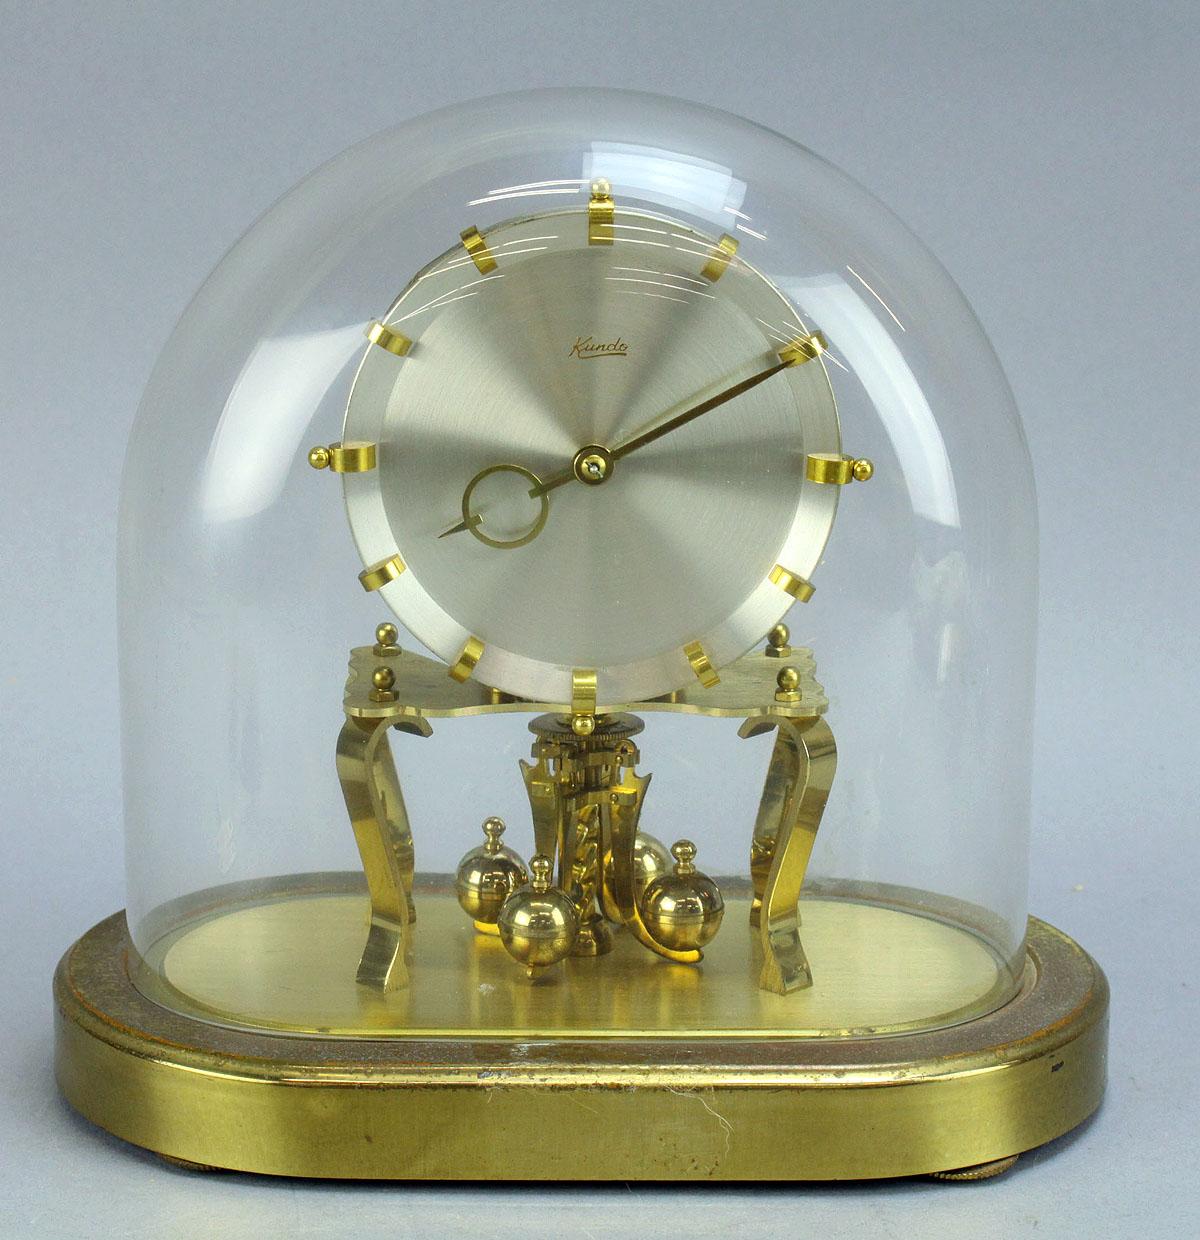 Kundo Anniversary Style Clock, Germany